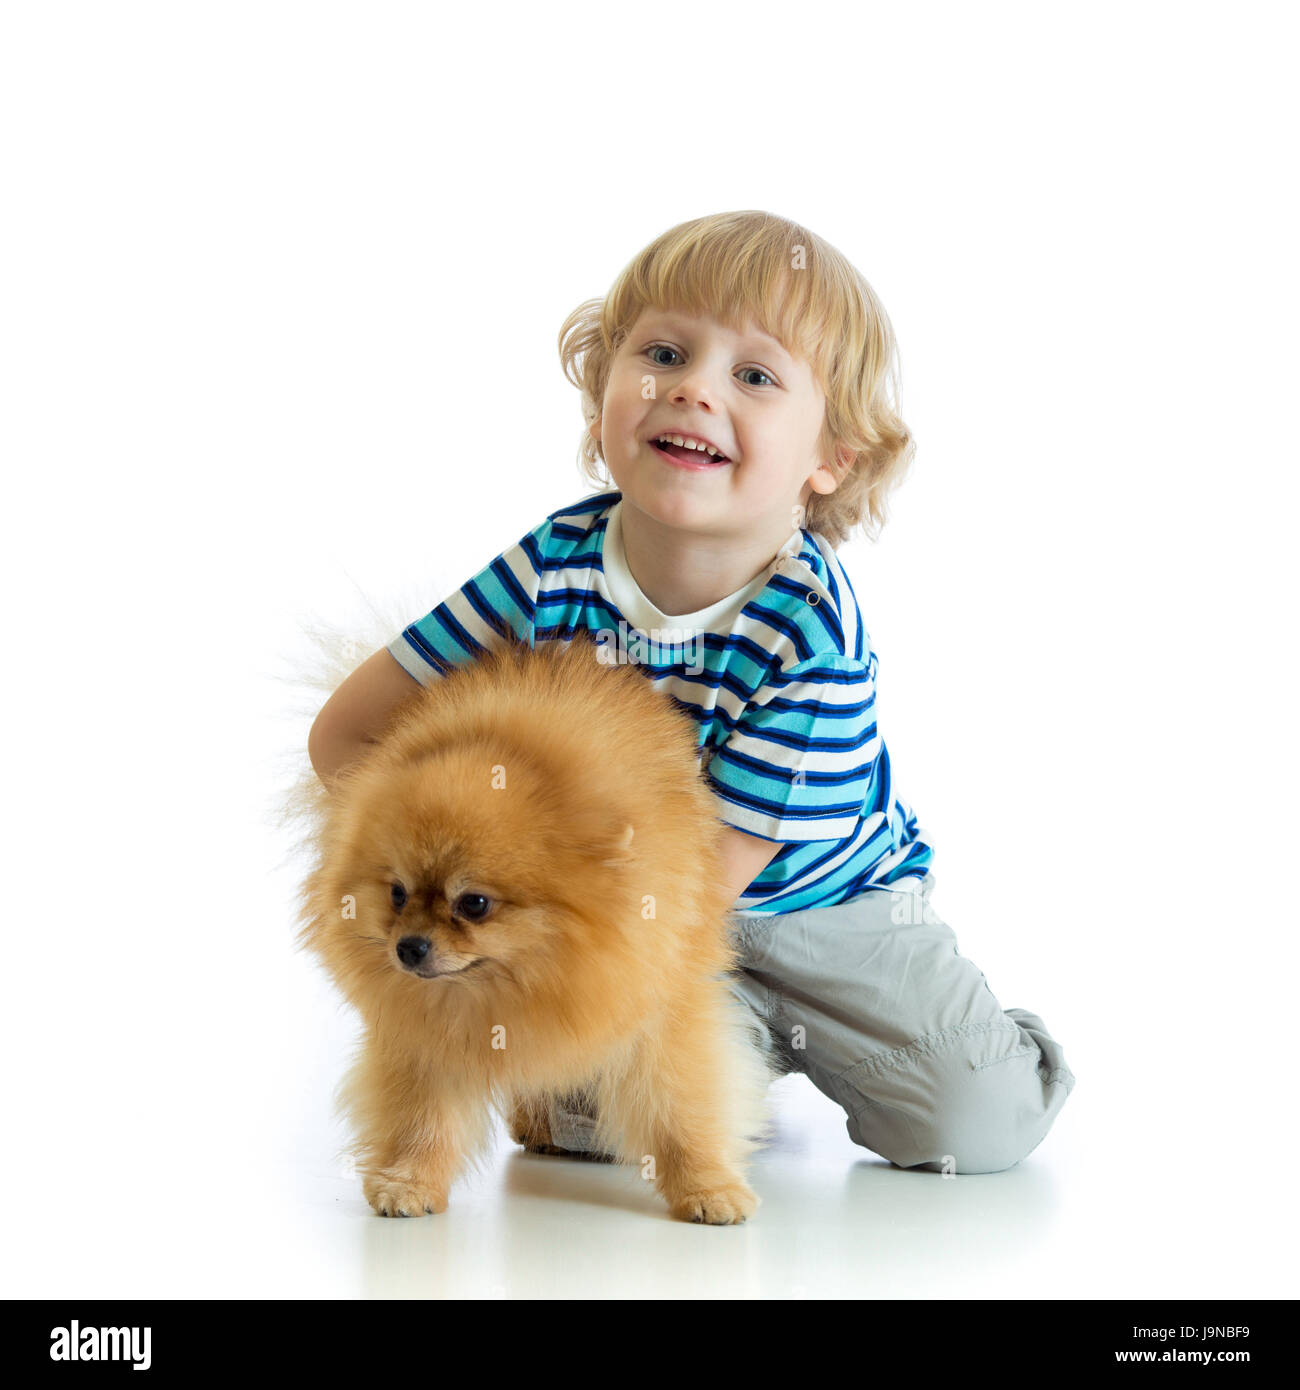 Child boy with dog spitz, isolated on white background Stock Photo